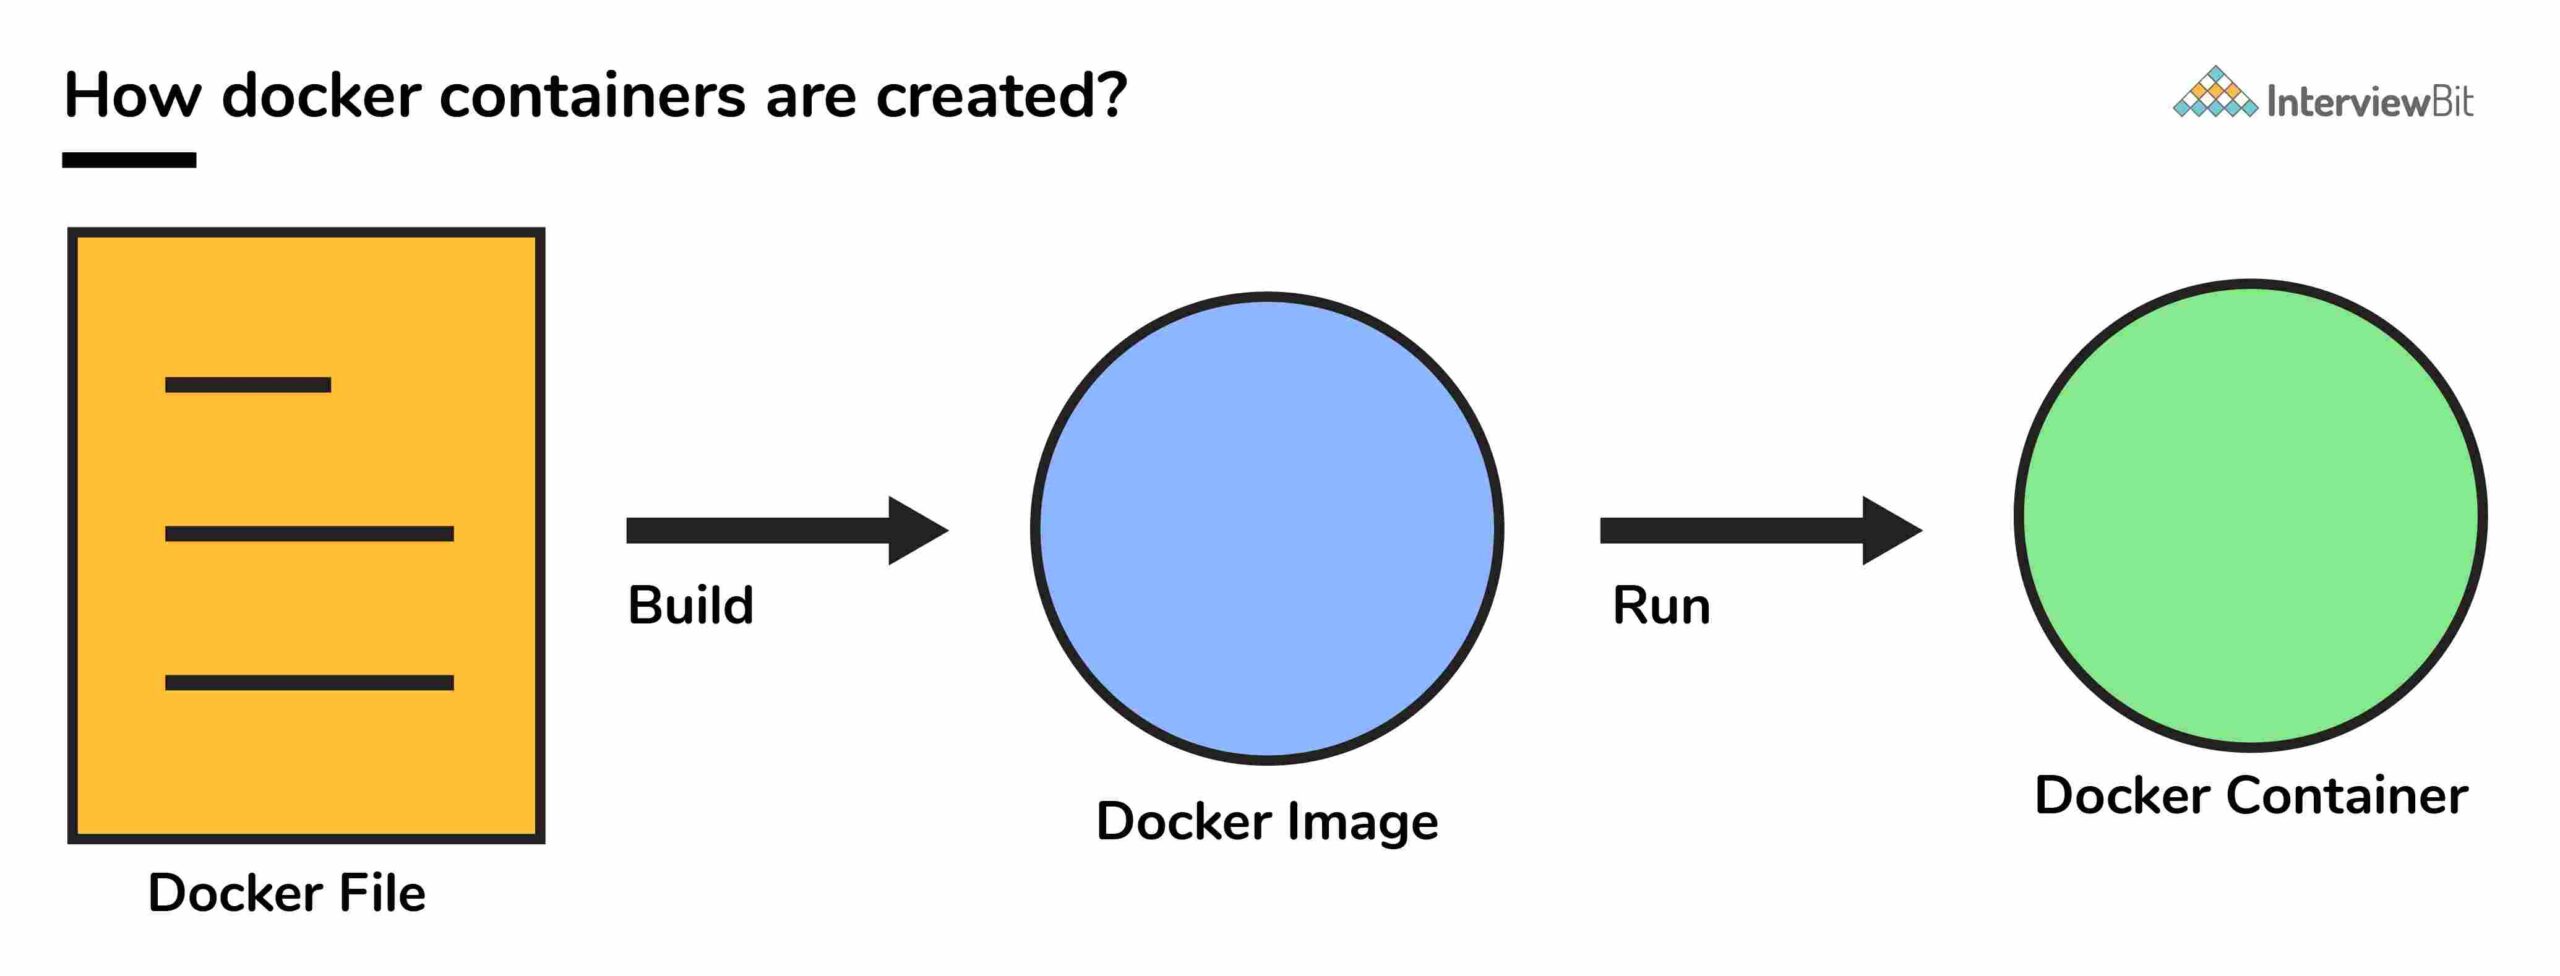 DockerFile là gì?